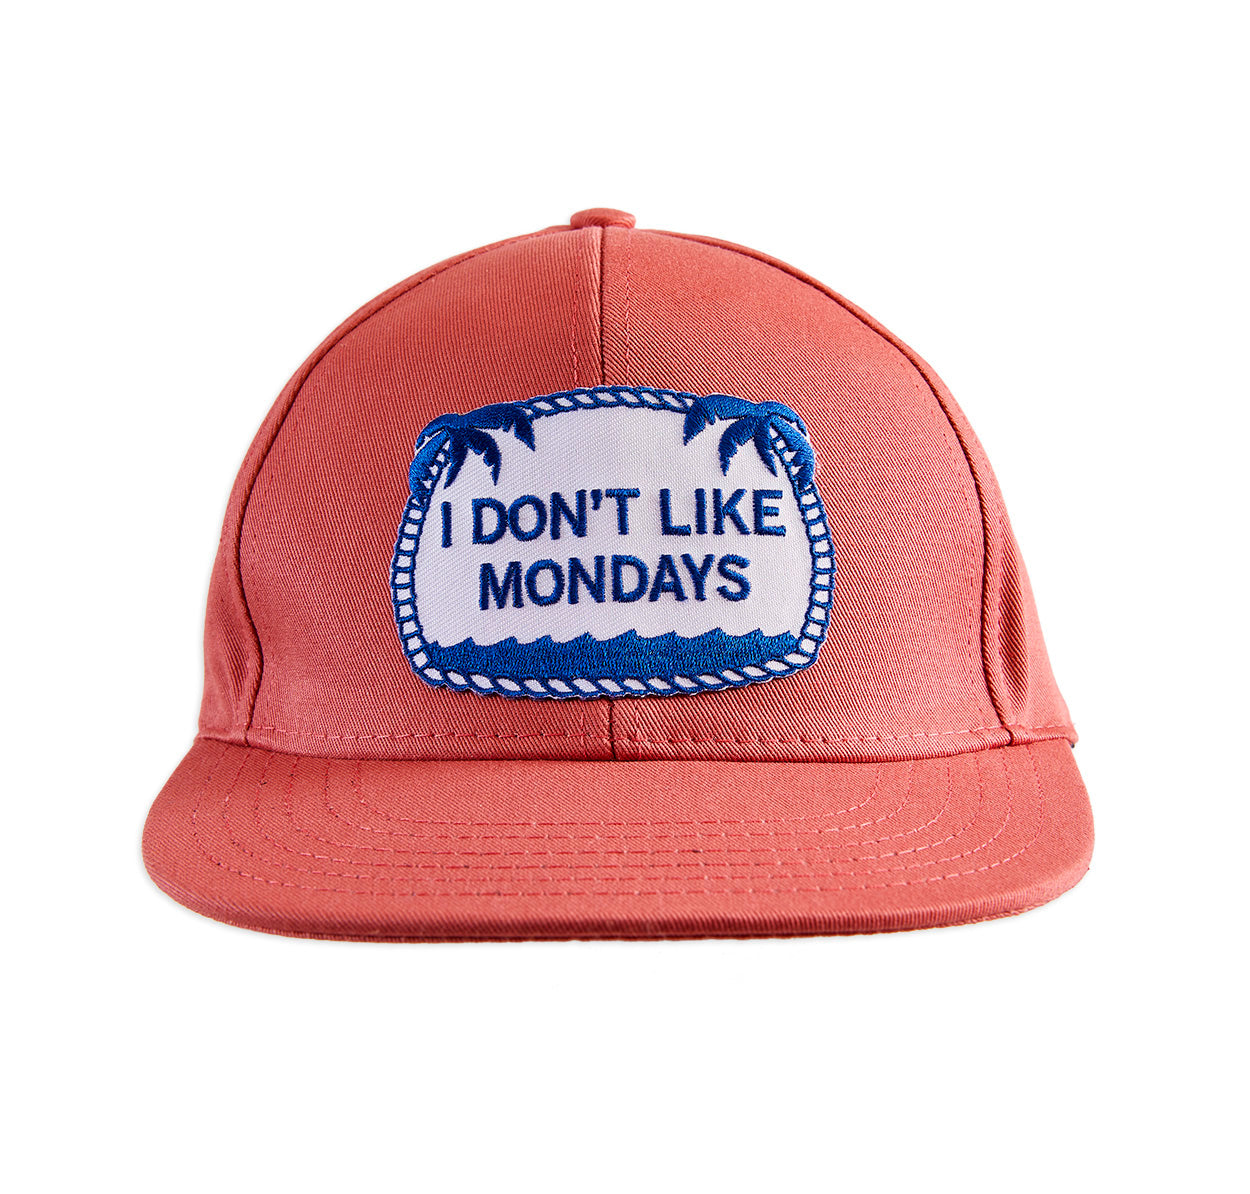 I Don't Like Mondays ball cap